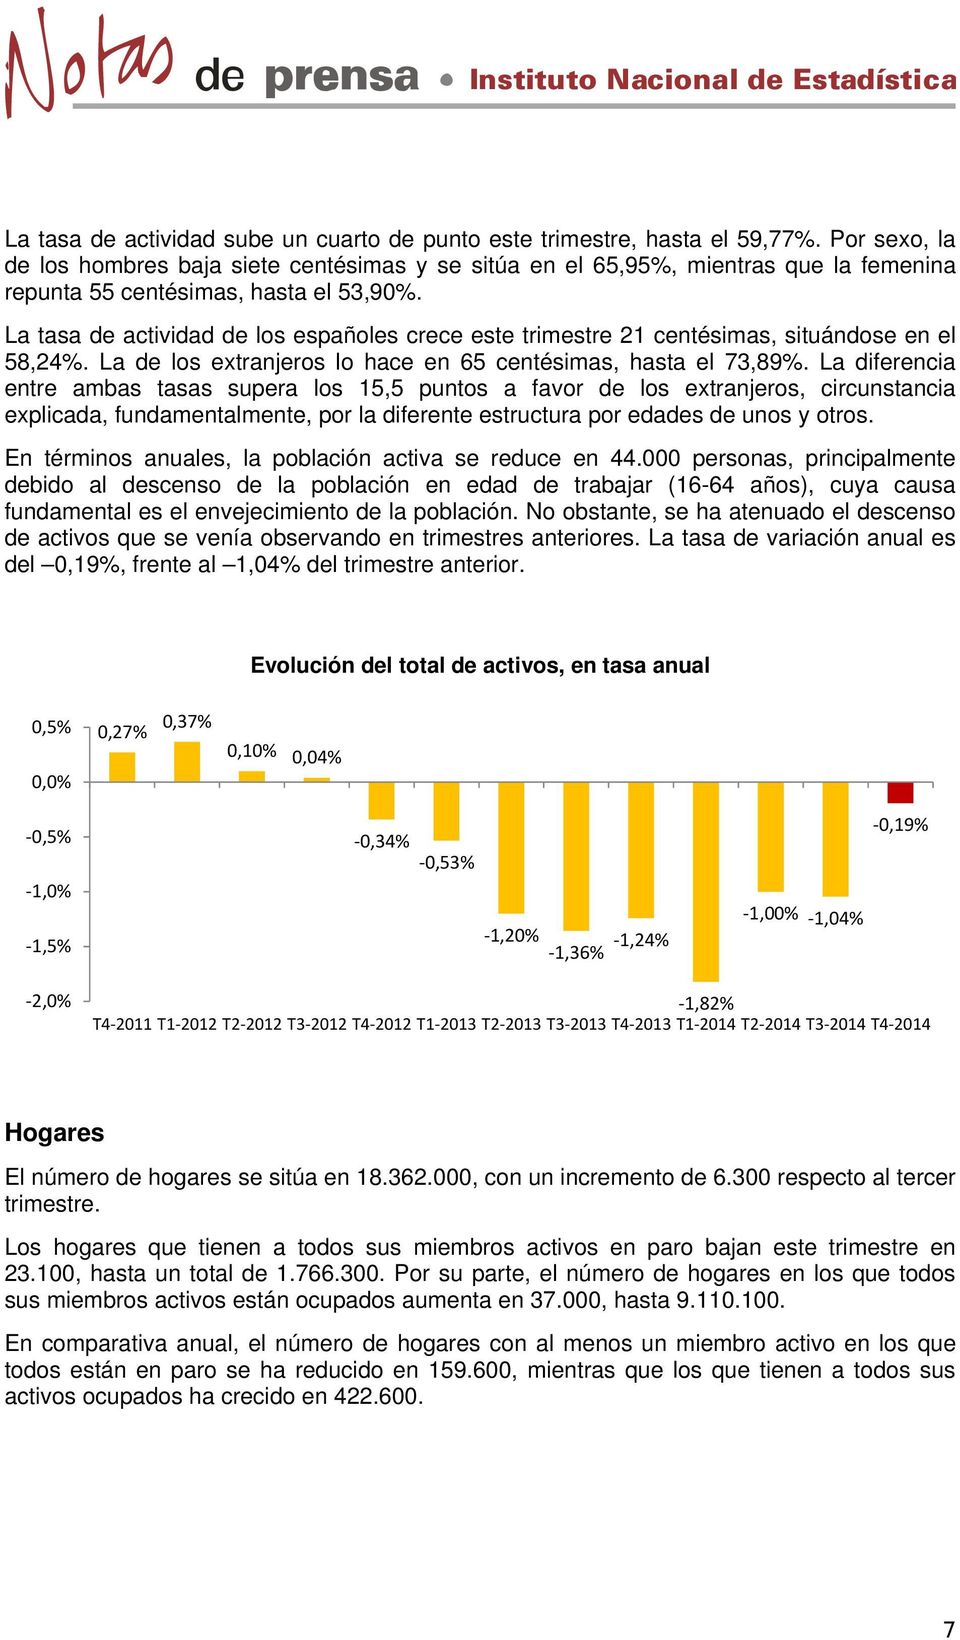 La tasa de actividad de los españoles crece este trimestre 21 centésimas, situándose en el 58,24%. La de los extranjeros lo hace en 65 centésimas, hasta el 73,89%.